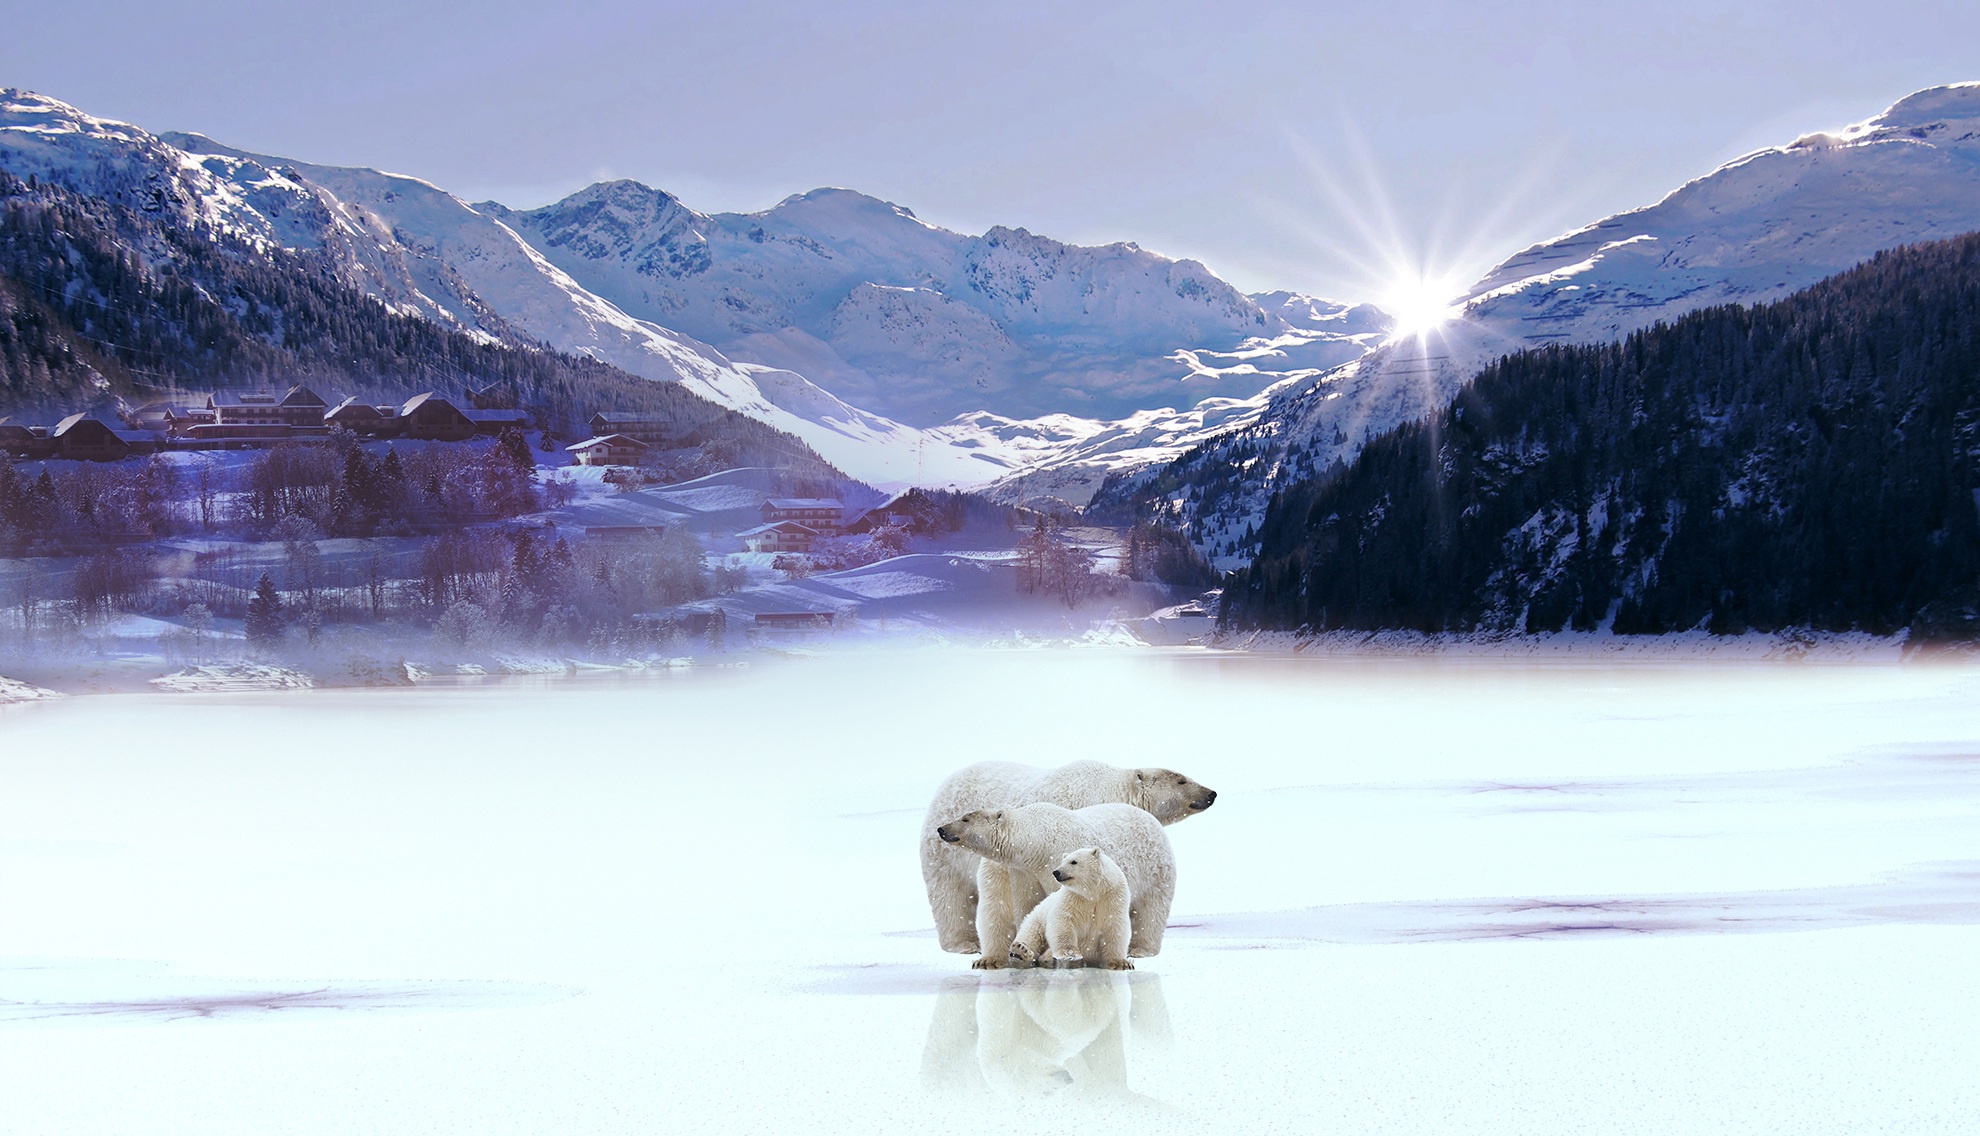 Download mobile wallpaper Winter, Bears, Bear, Animal, Polar Bear for free.